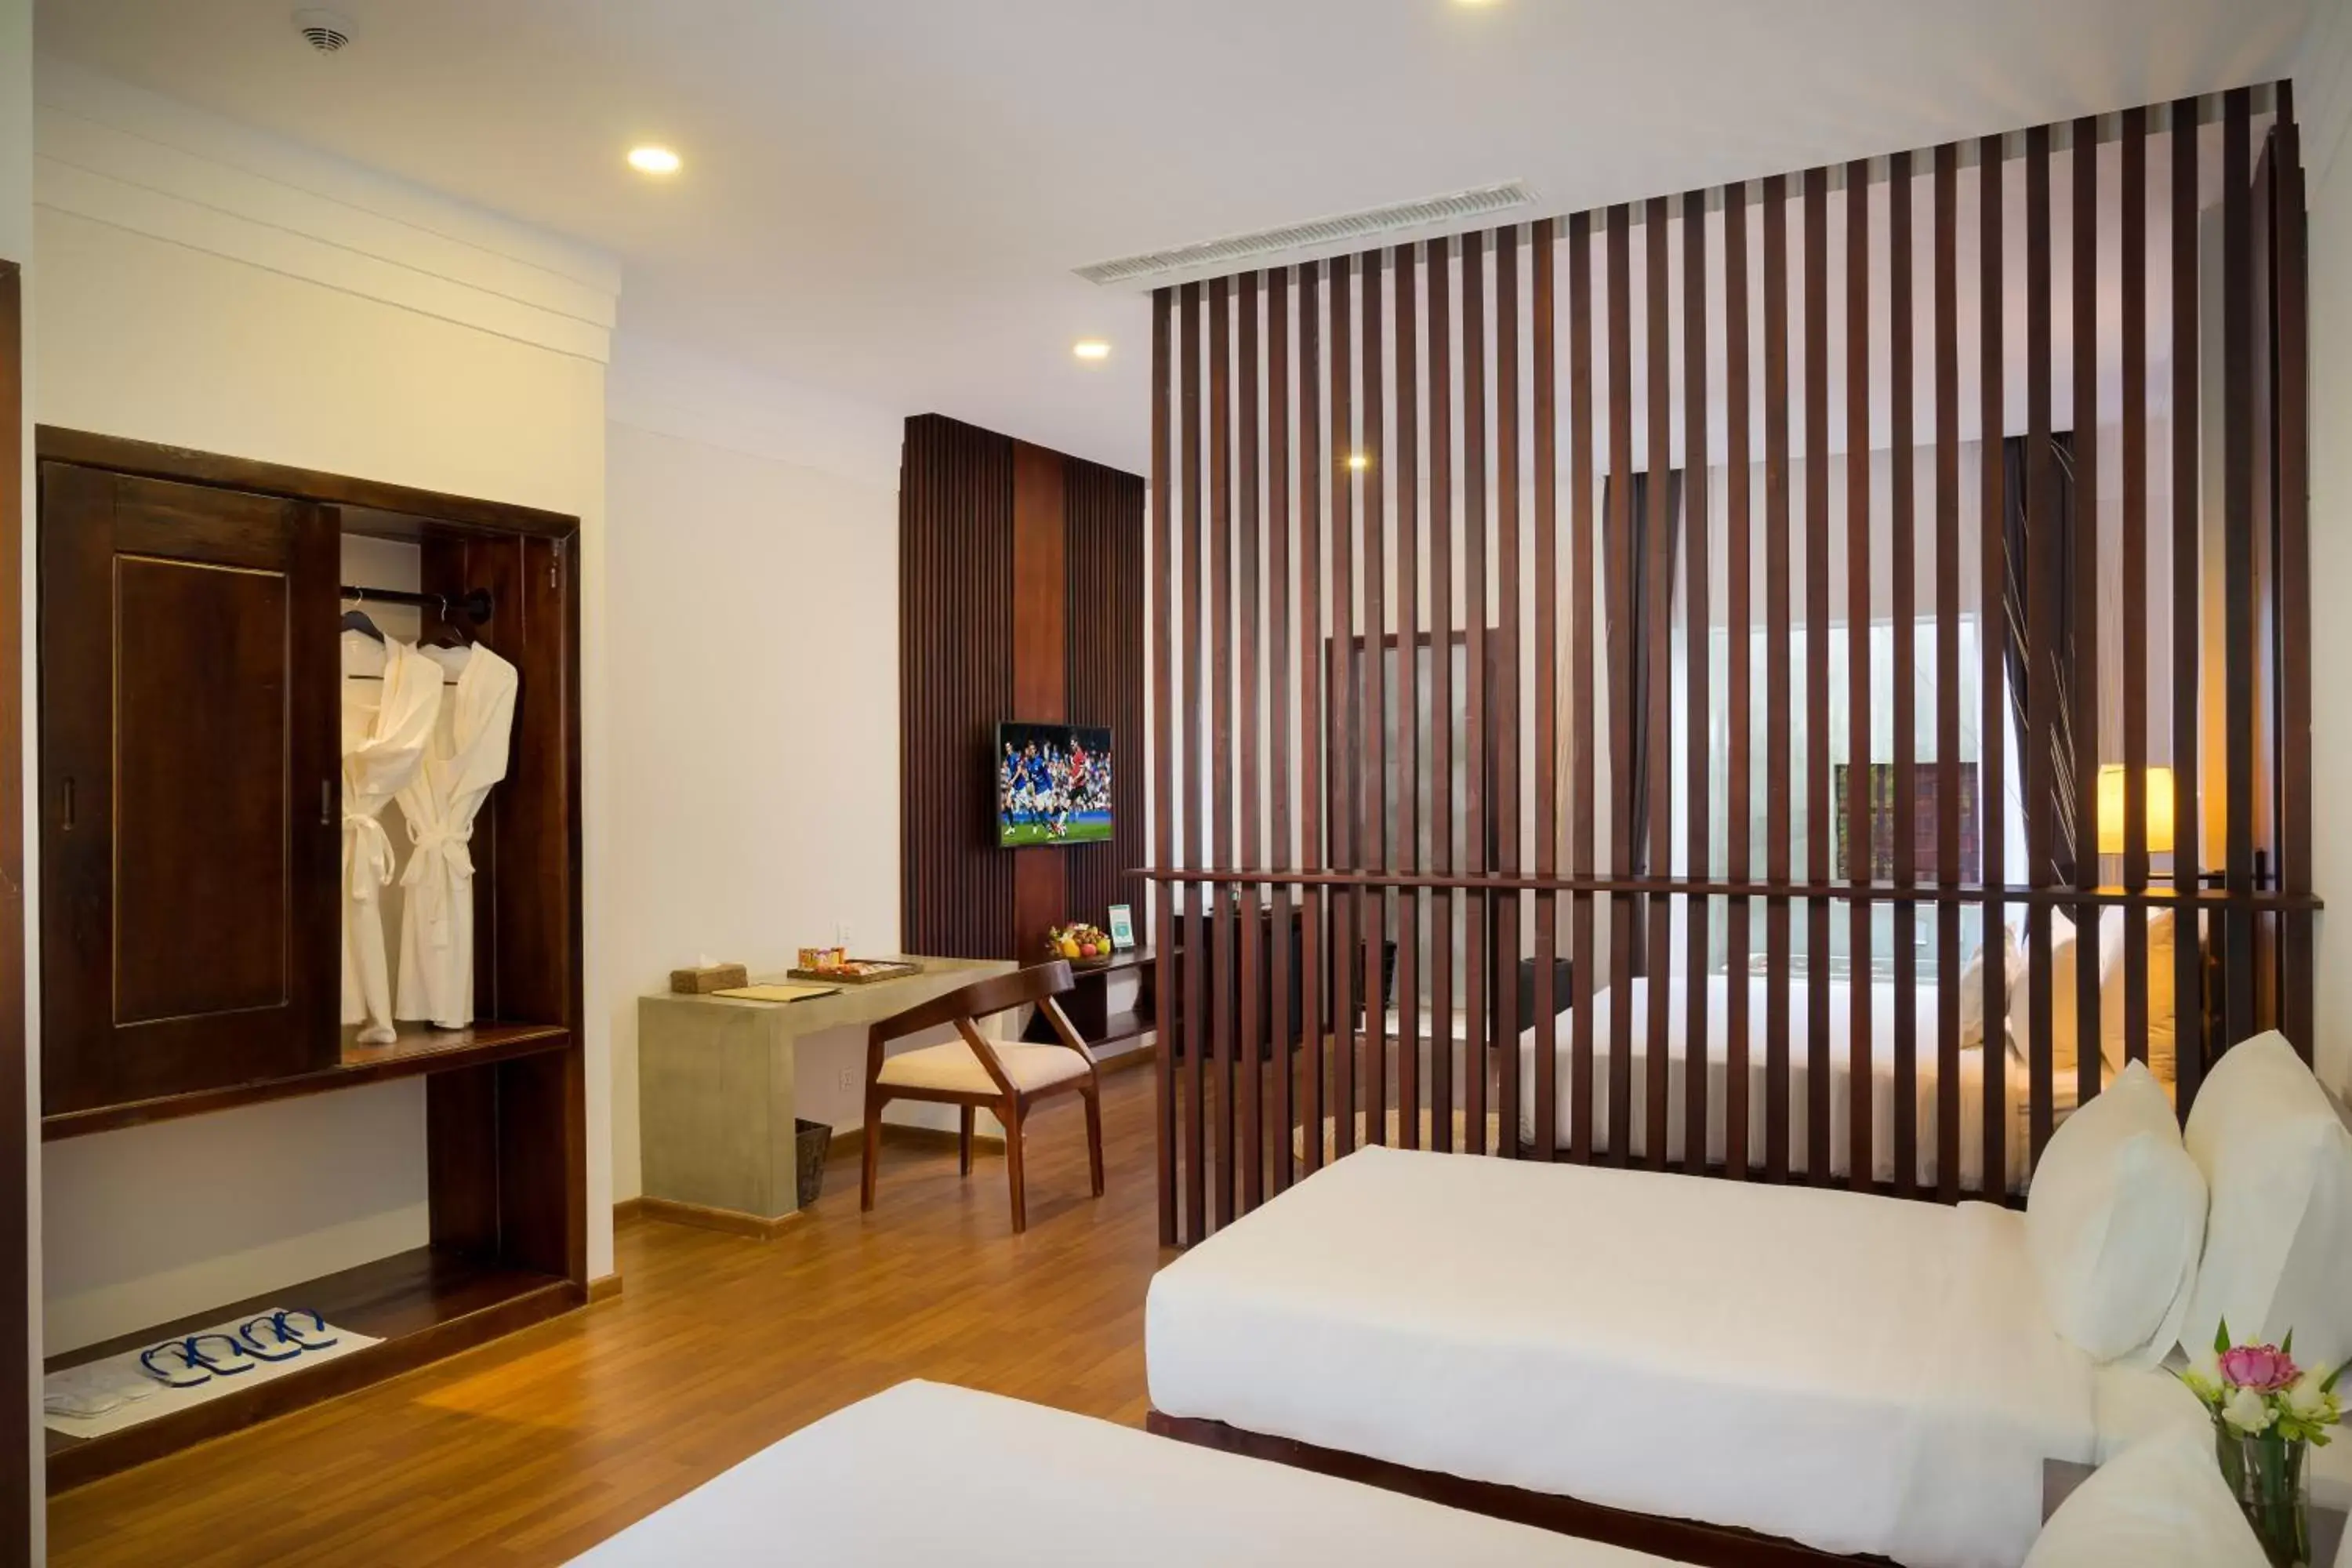 Bedroom, TV/Entertainment Center in Sabara Angkor Resort & Spa